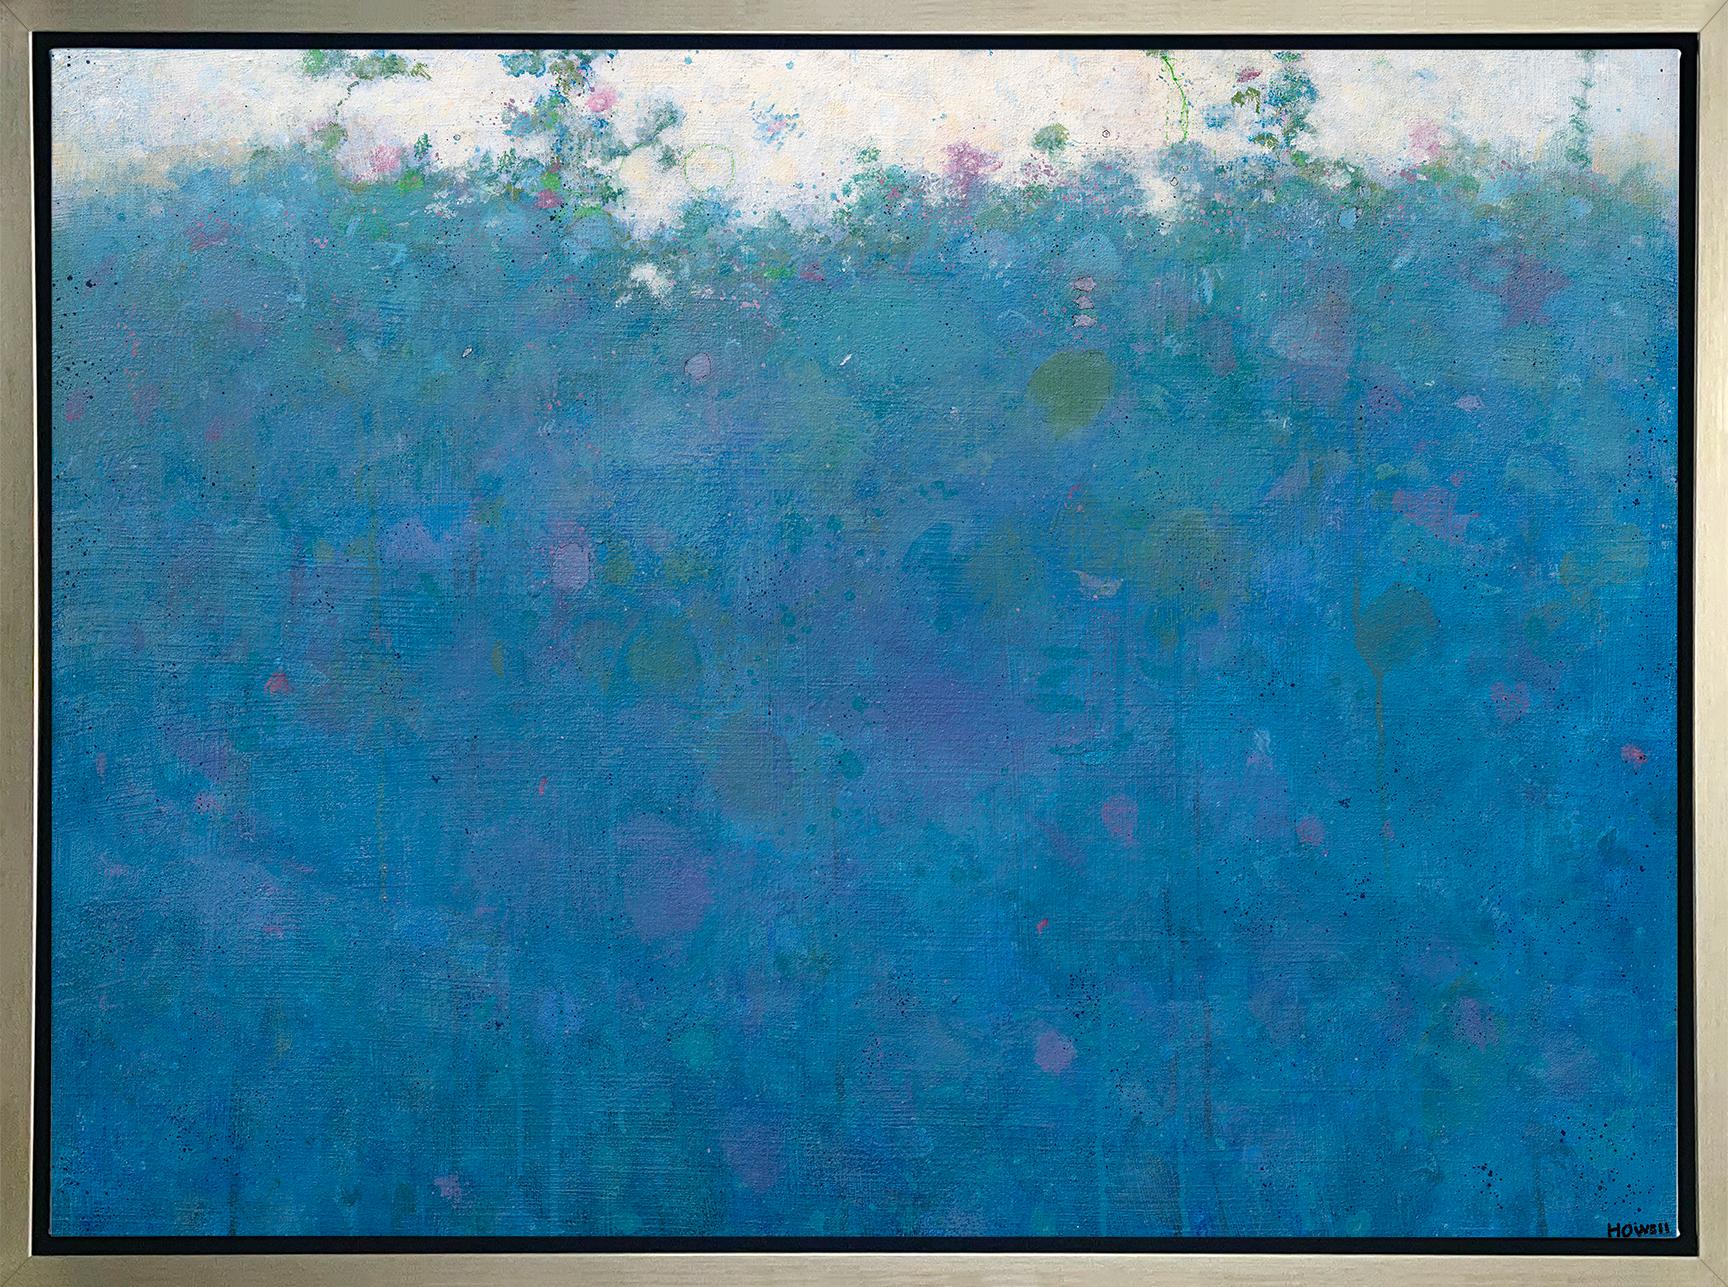 Landscape Print Elwood Howell - « Blue Magic », imprimé giclée encadré en édition limitée, 61 x 81 cm